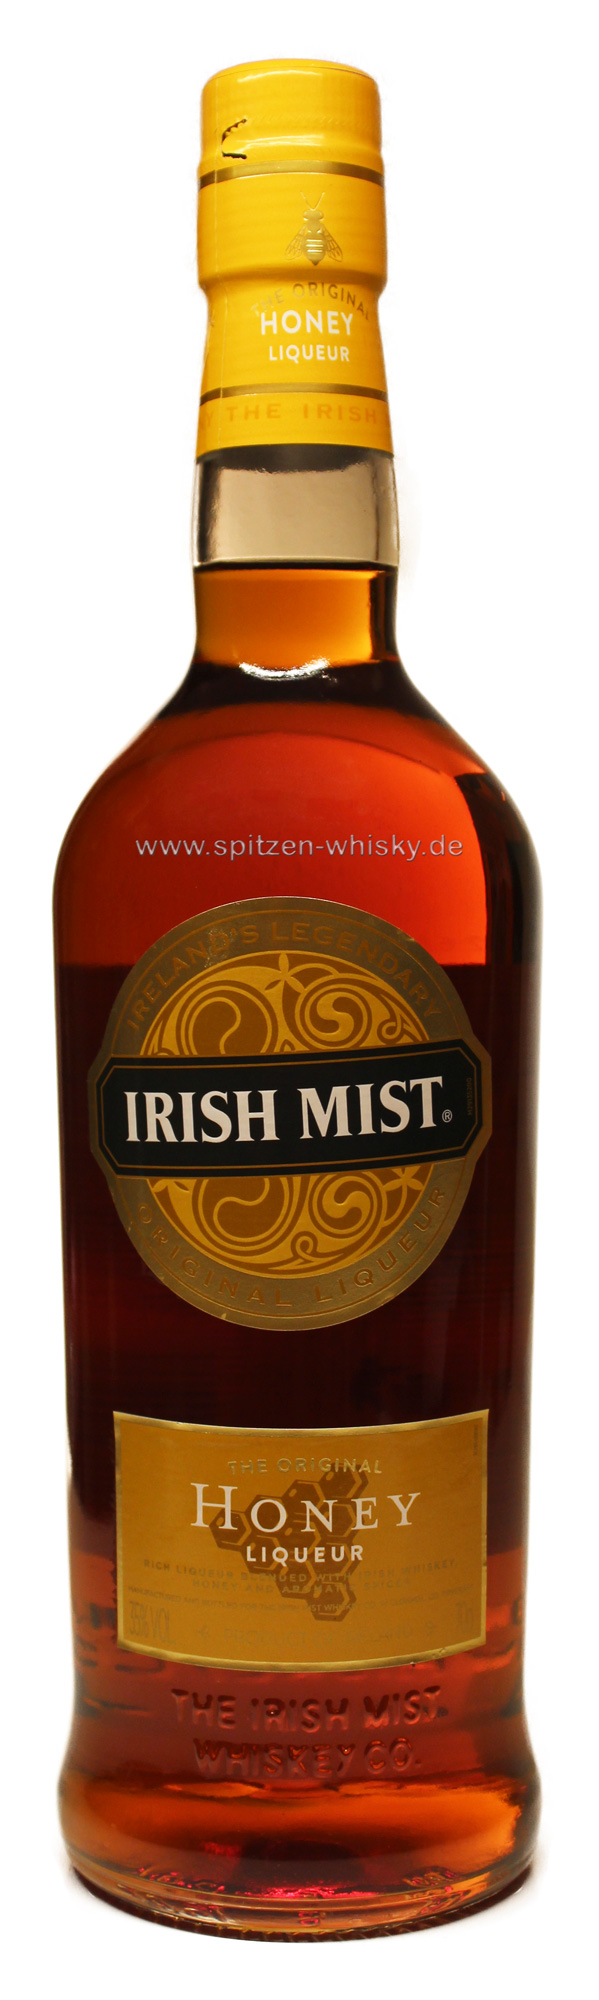 zu Irish Mist Single der Whisky-Shop Malt günstigen Spitzen-Whisky.de für Preisen | | Irland Whisky Mist 0,7l 35% Irish |